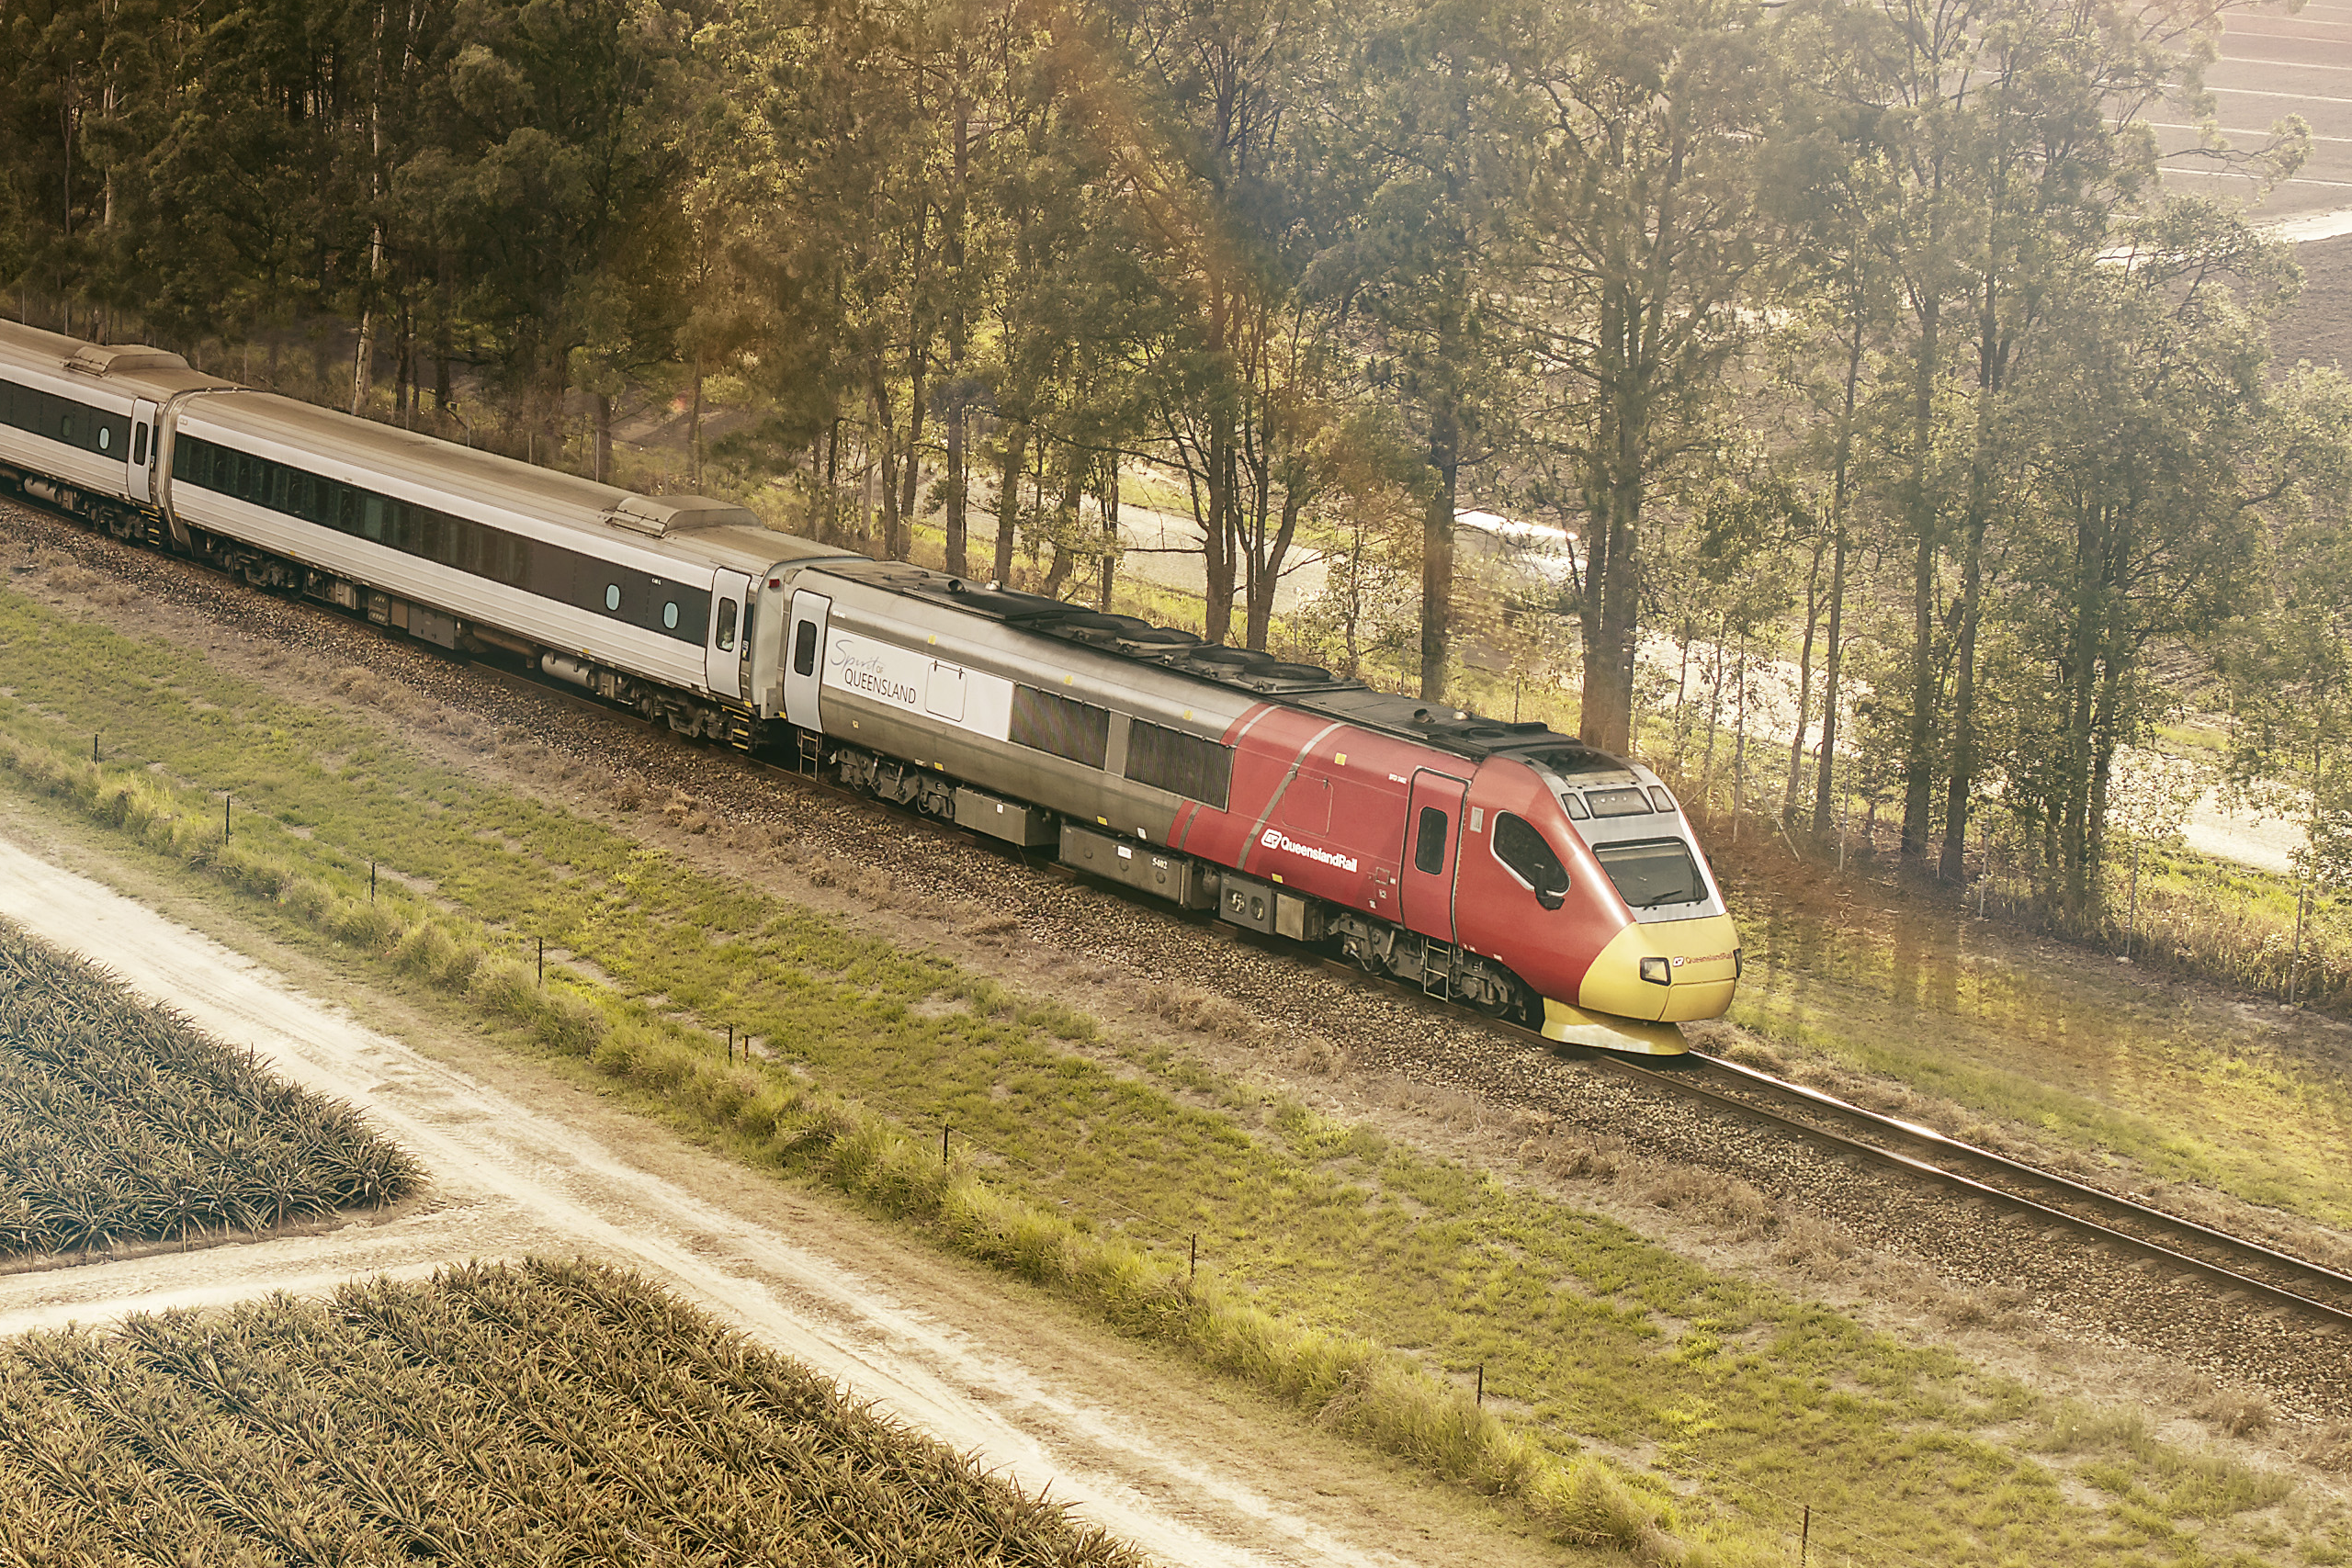 Case Study – Queensland Rail